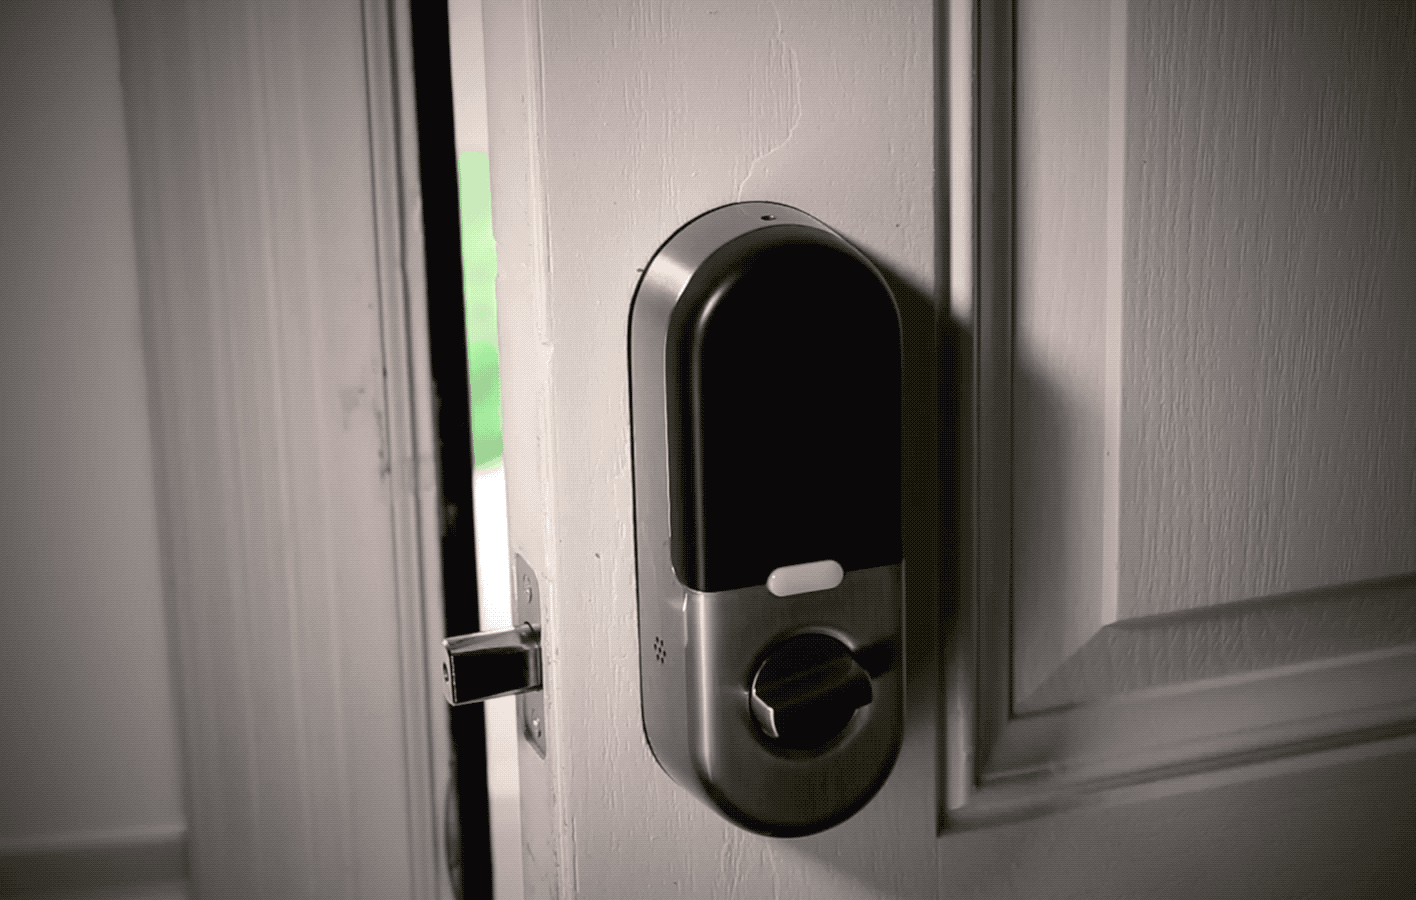 Security flaws in a popular smart home hub let hackers unlock front doors | TechCrunch